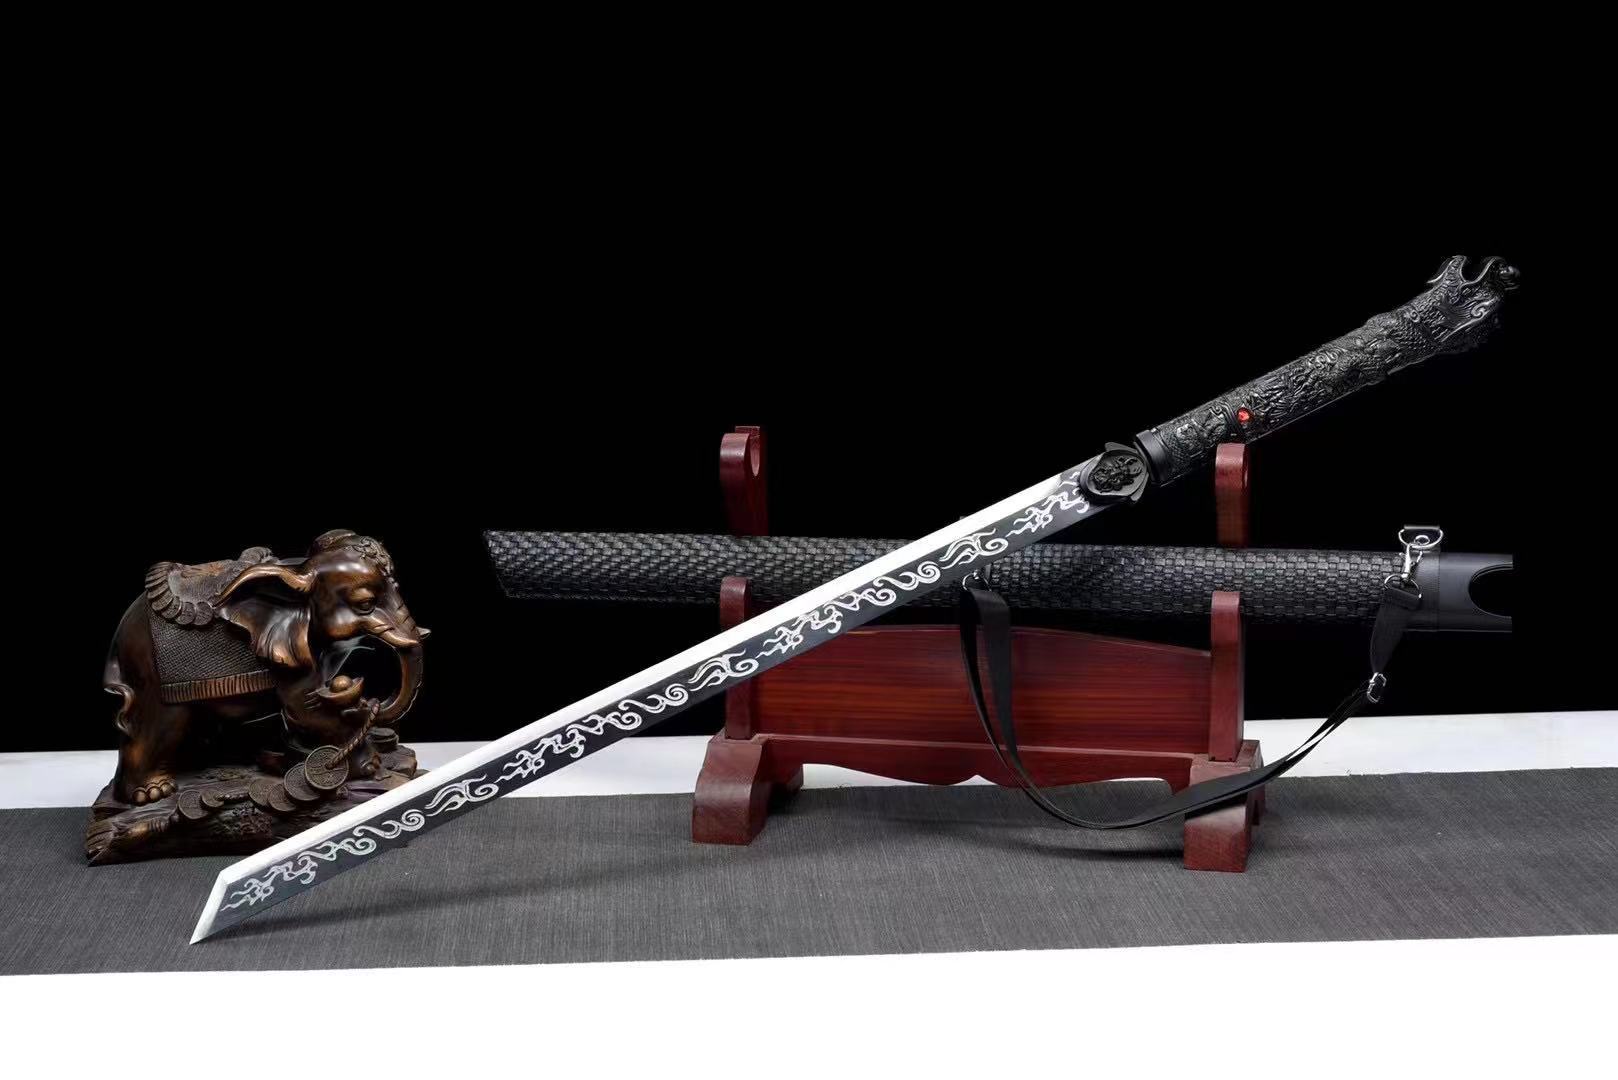 High Carbon Steel Samurai Swords Full Tang Blade Katana Japanese Swords Black Blade - Masamune Swords-Samurai Katana Swords UK For Sale